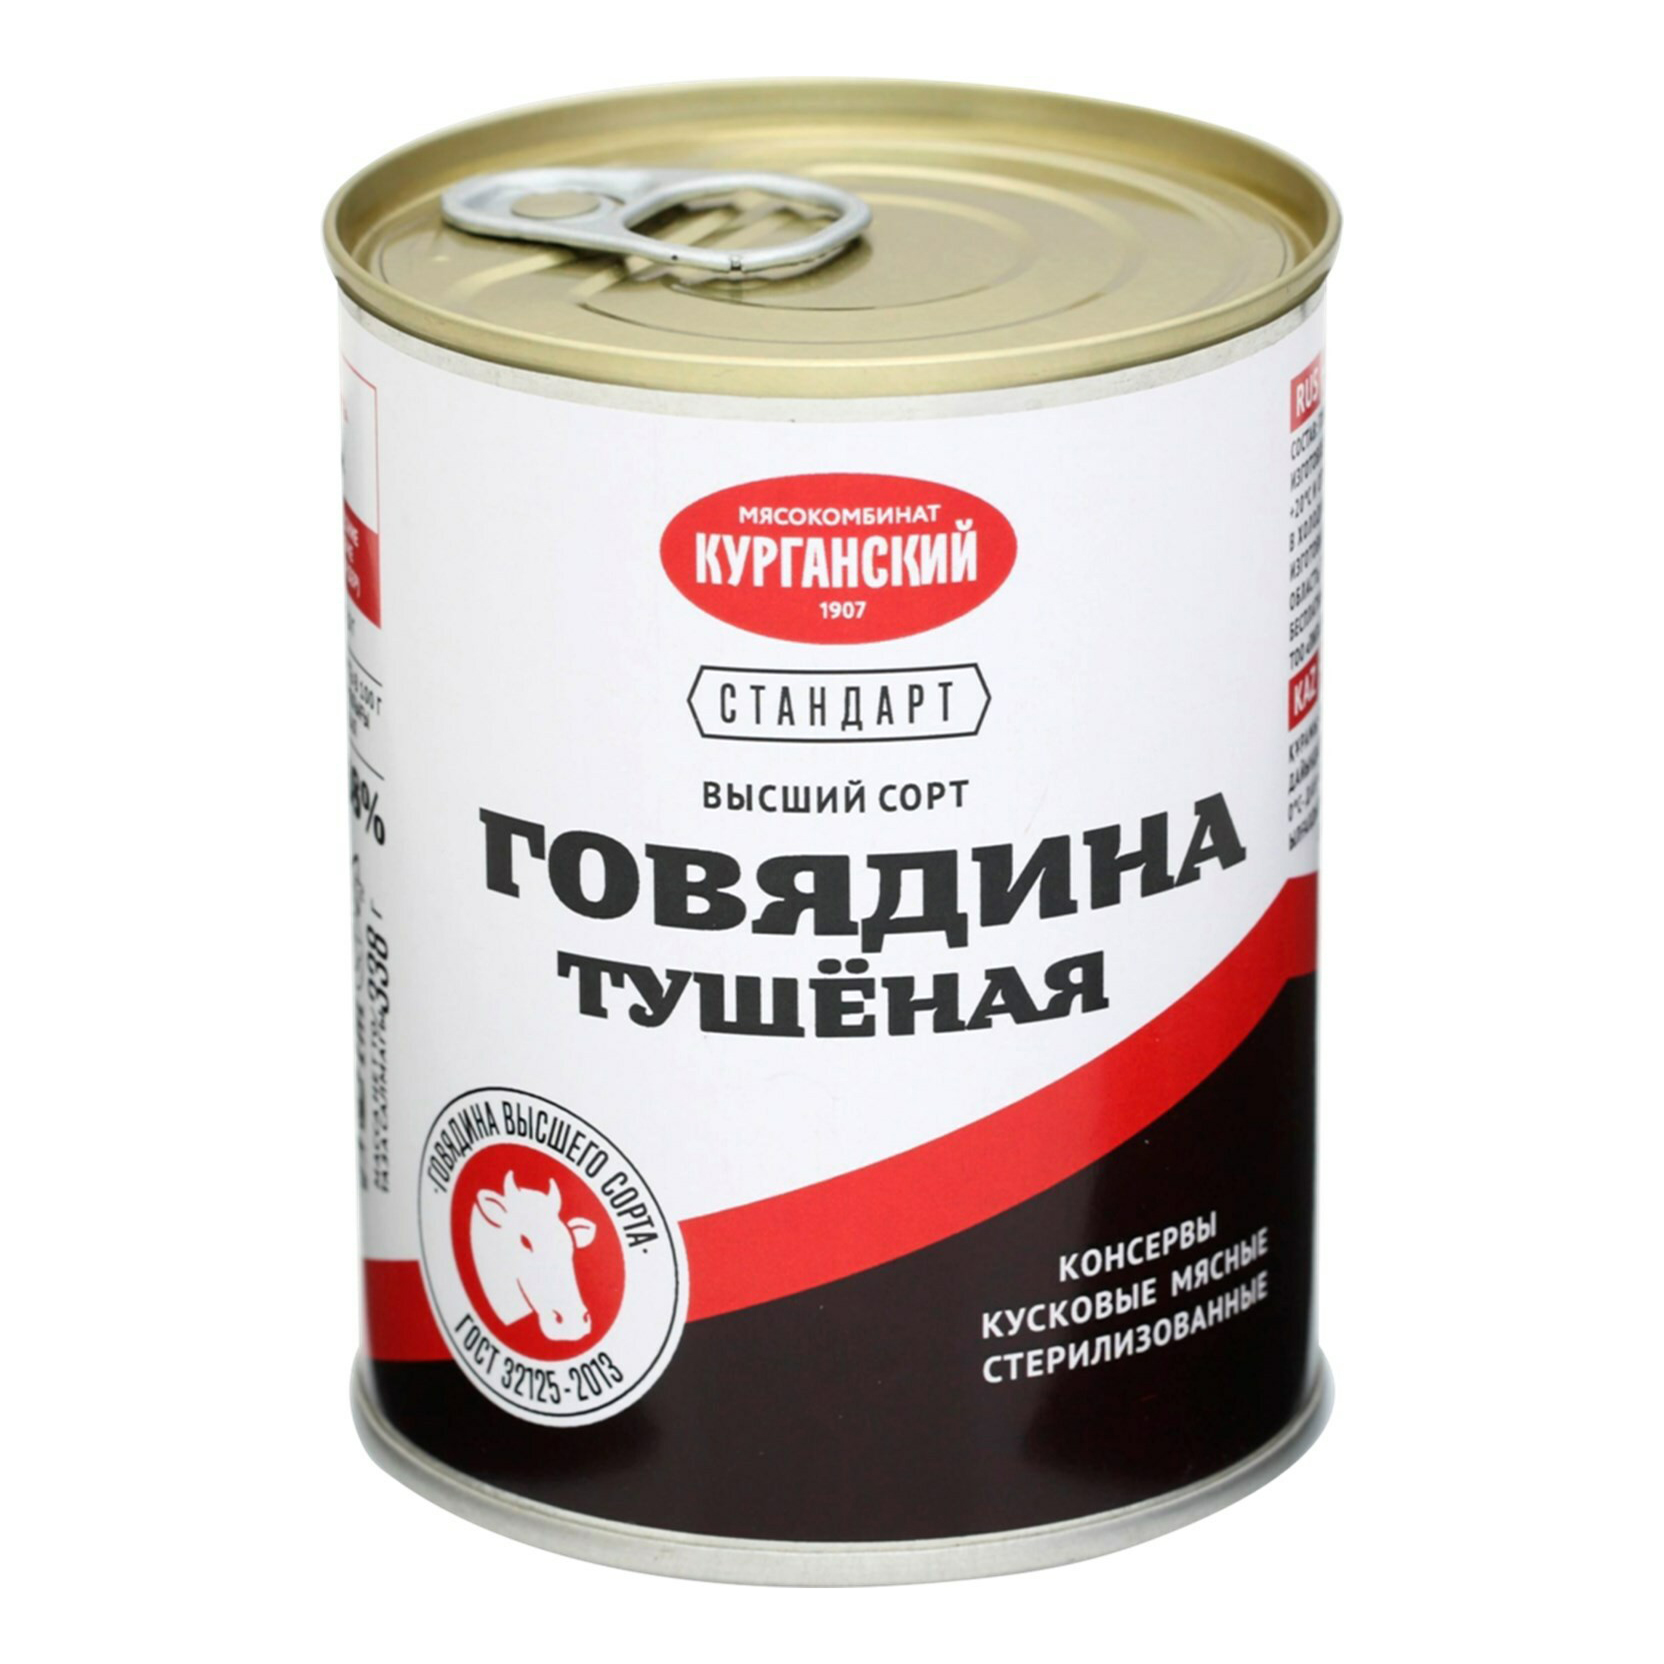 Говядина Курганский мясокомбинат тушеная высший сорт Стандарт 338 г - купить в Мегамаркет Новосибирск, цена на Мегамаркет